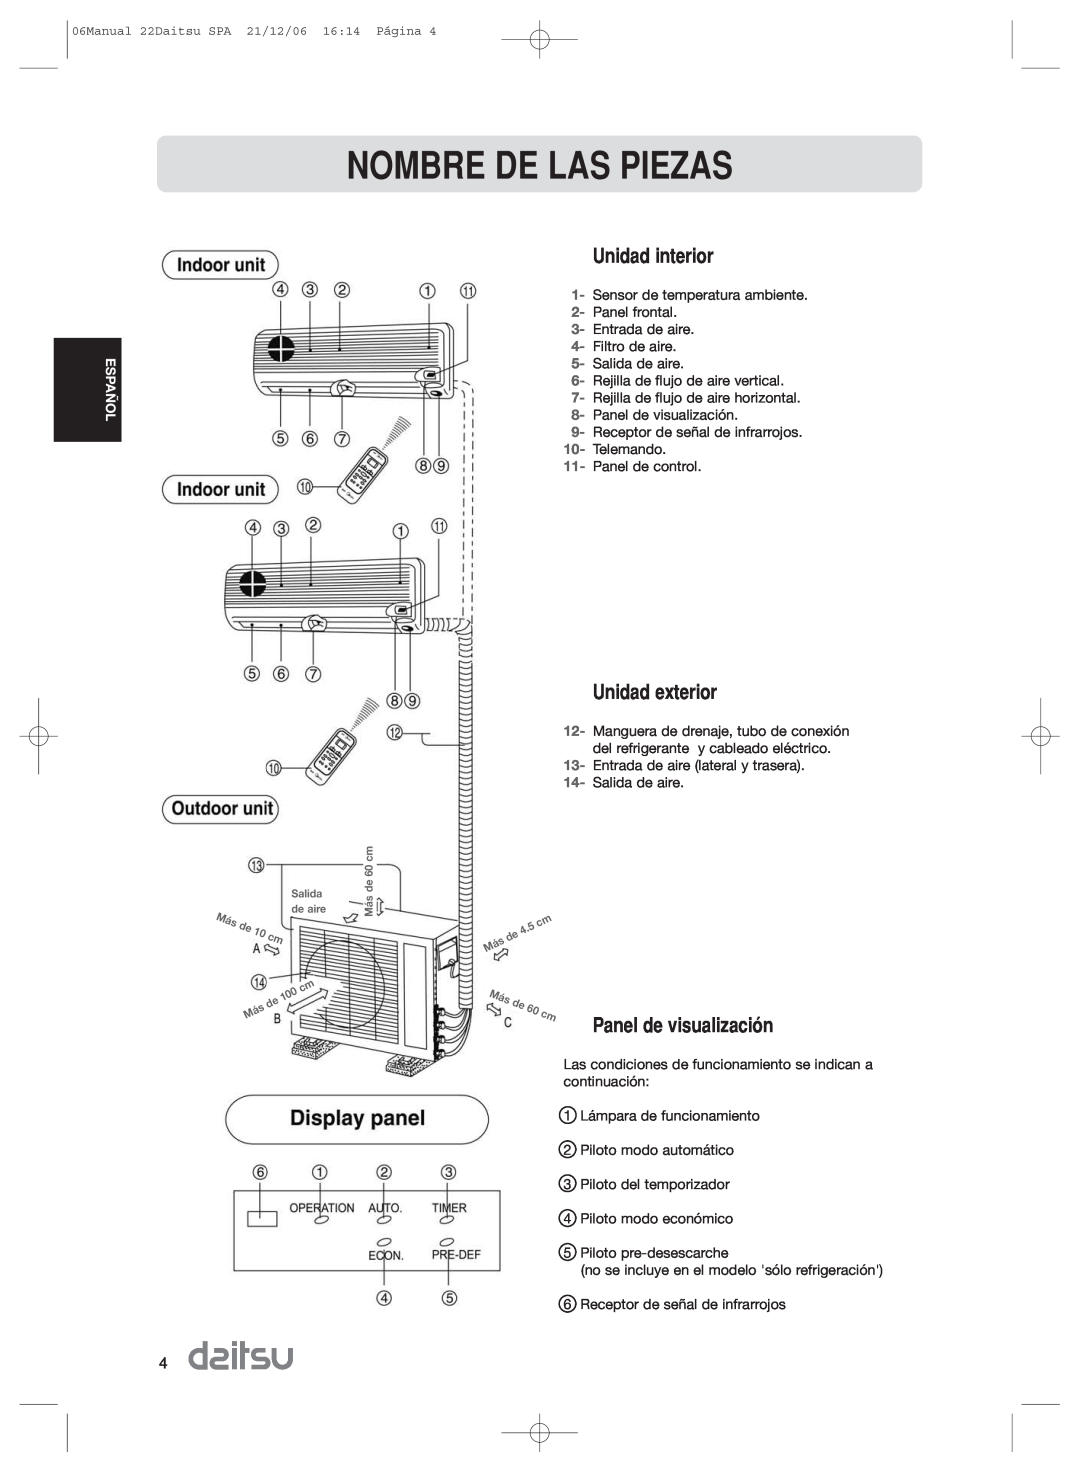 Daitsu ASD 9U2, ASD 129U11 operation manual Nombre De Las Piezas, Unidad interior, Unidad exterior, Panel de visualizaci-n 